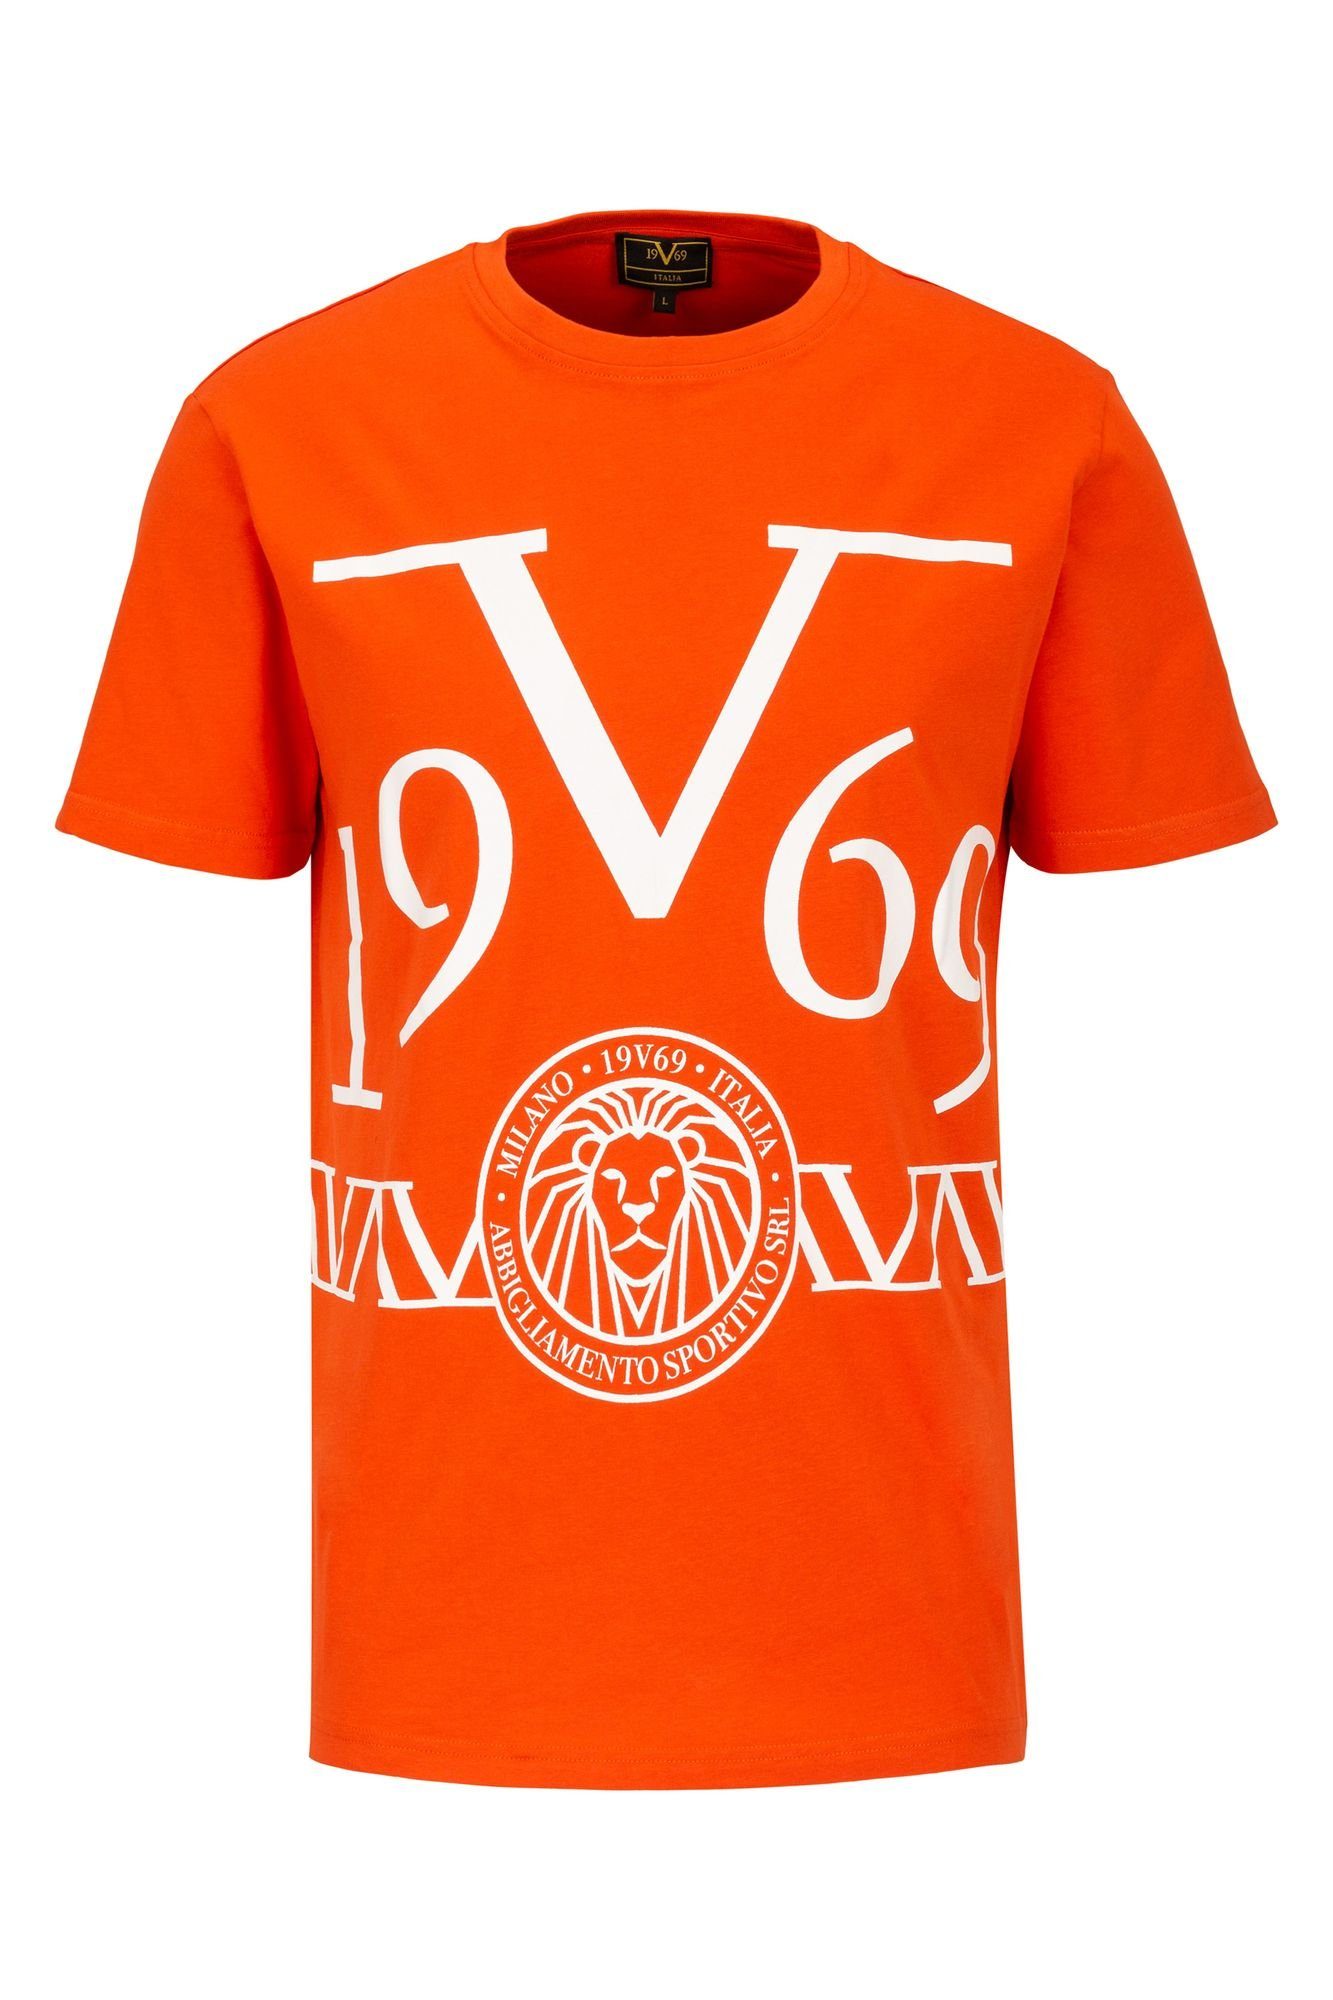 19V69 Italia by Versace T-Shirt Daniel